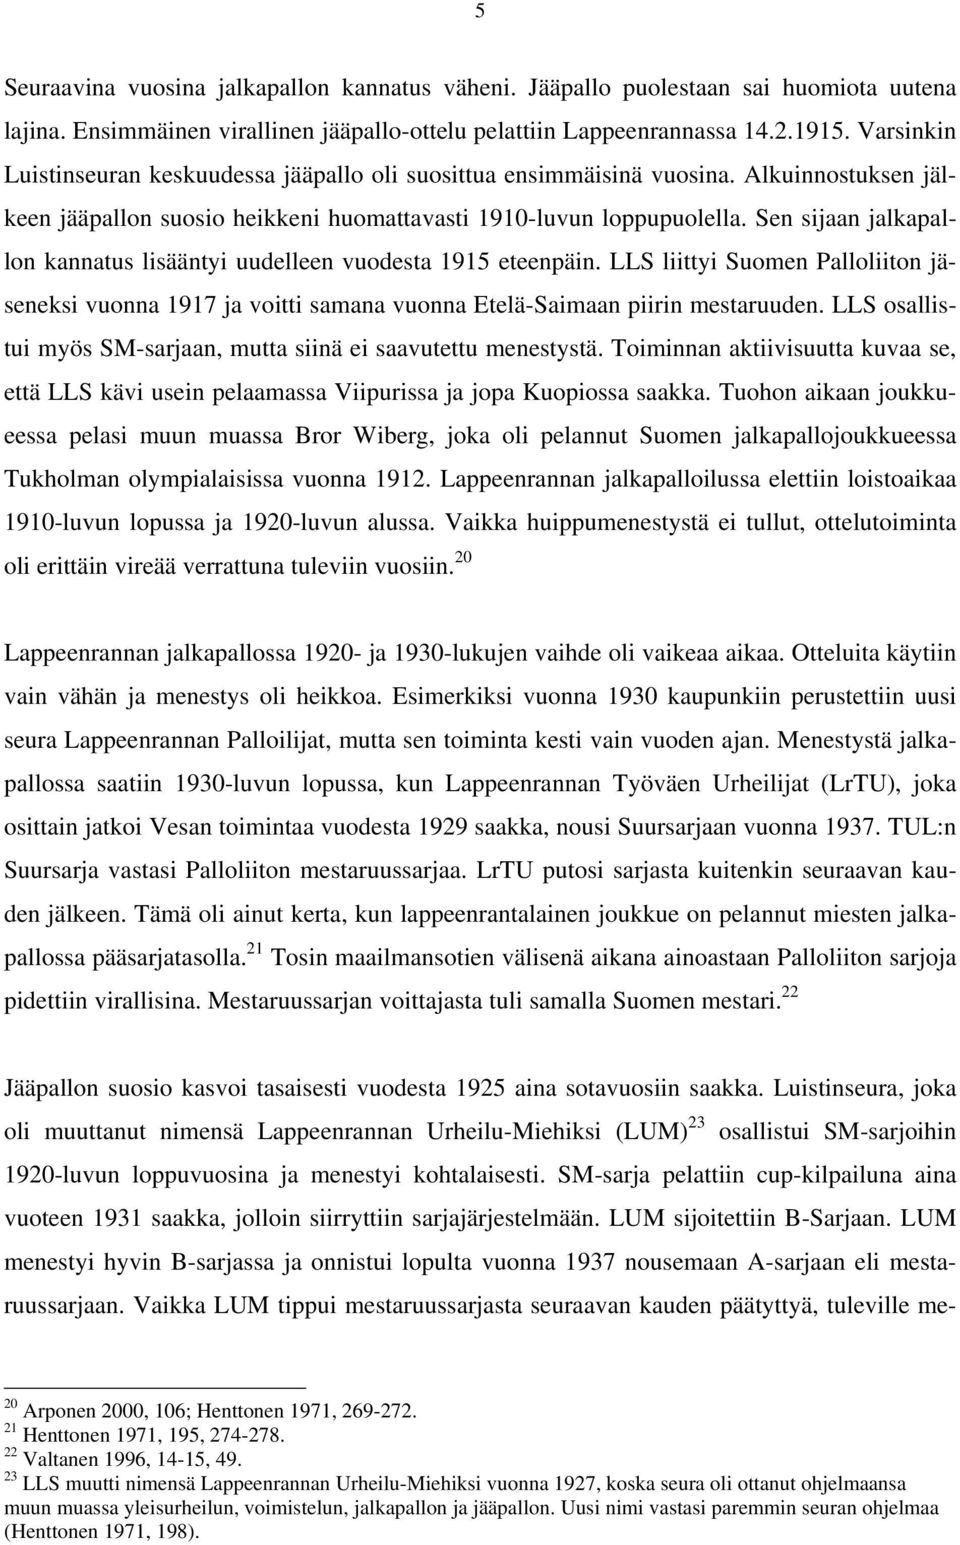 Sen sijaan jalkapallon kannatus lisääntyi uudelleen vuodesta 1915 eteenpäin. LLS liittyi Suomen Palloliiton jäseneksi vuonna 1917 ja voitti samana vuonna Etelä-Saimaan piirin mestaruuden.